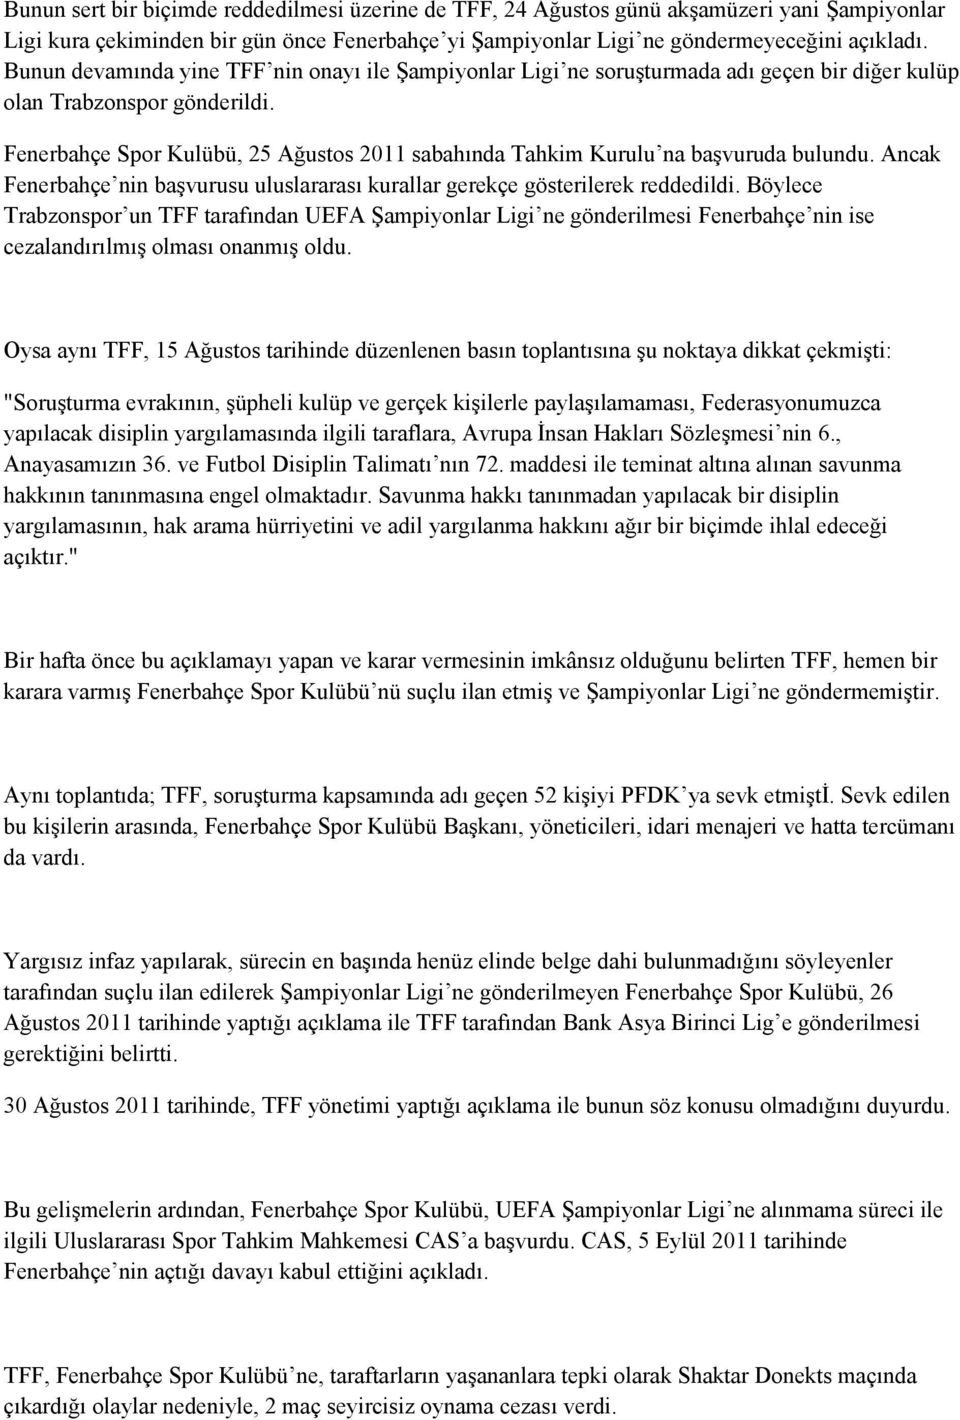 Fenerbahçe Spor Kulübü, 25 Ağustos 2011 sabahında Tahkim Kurulu na başvuruda bulundu. Ancak Fenerbahçe nin başvurusu uluslararası kurallar gerekçe gösterilerek reddedildi.